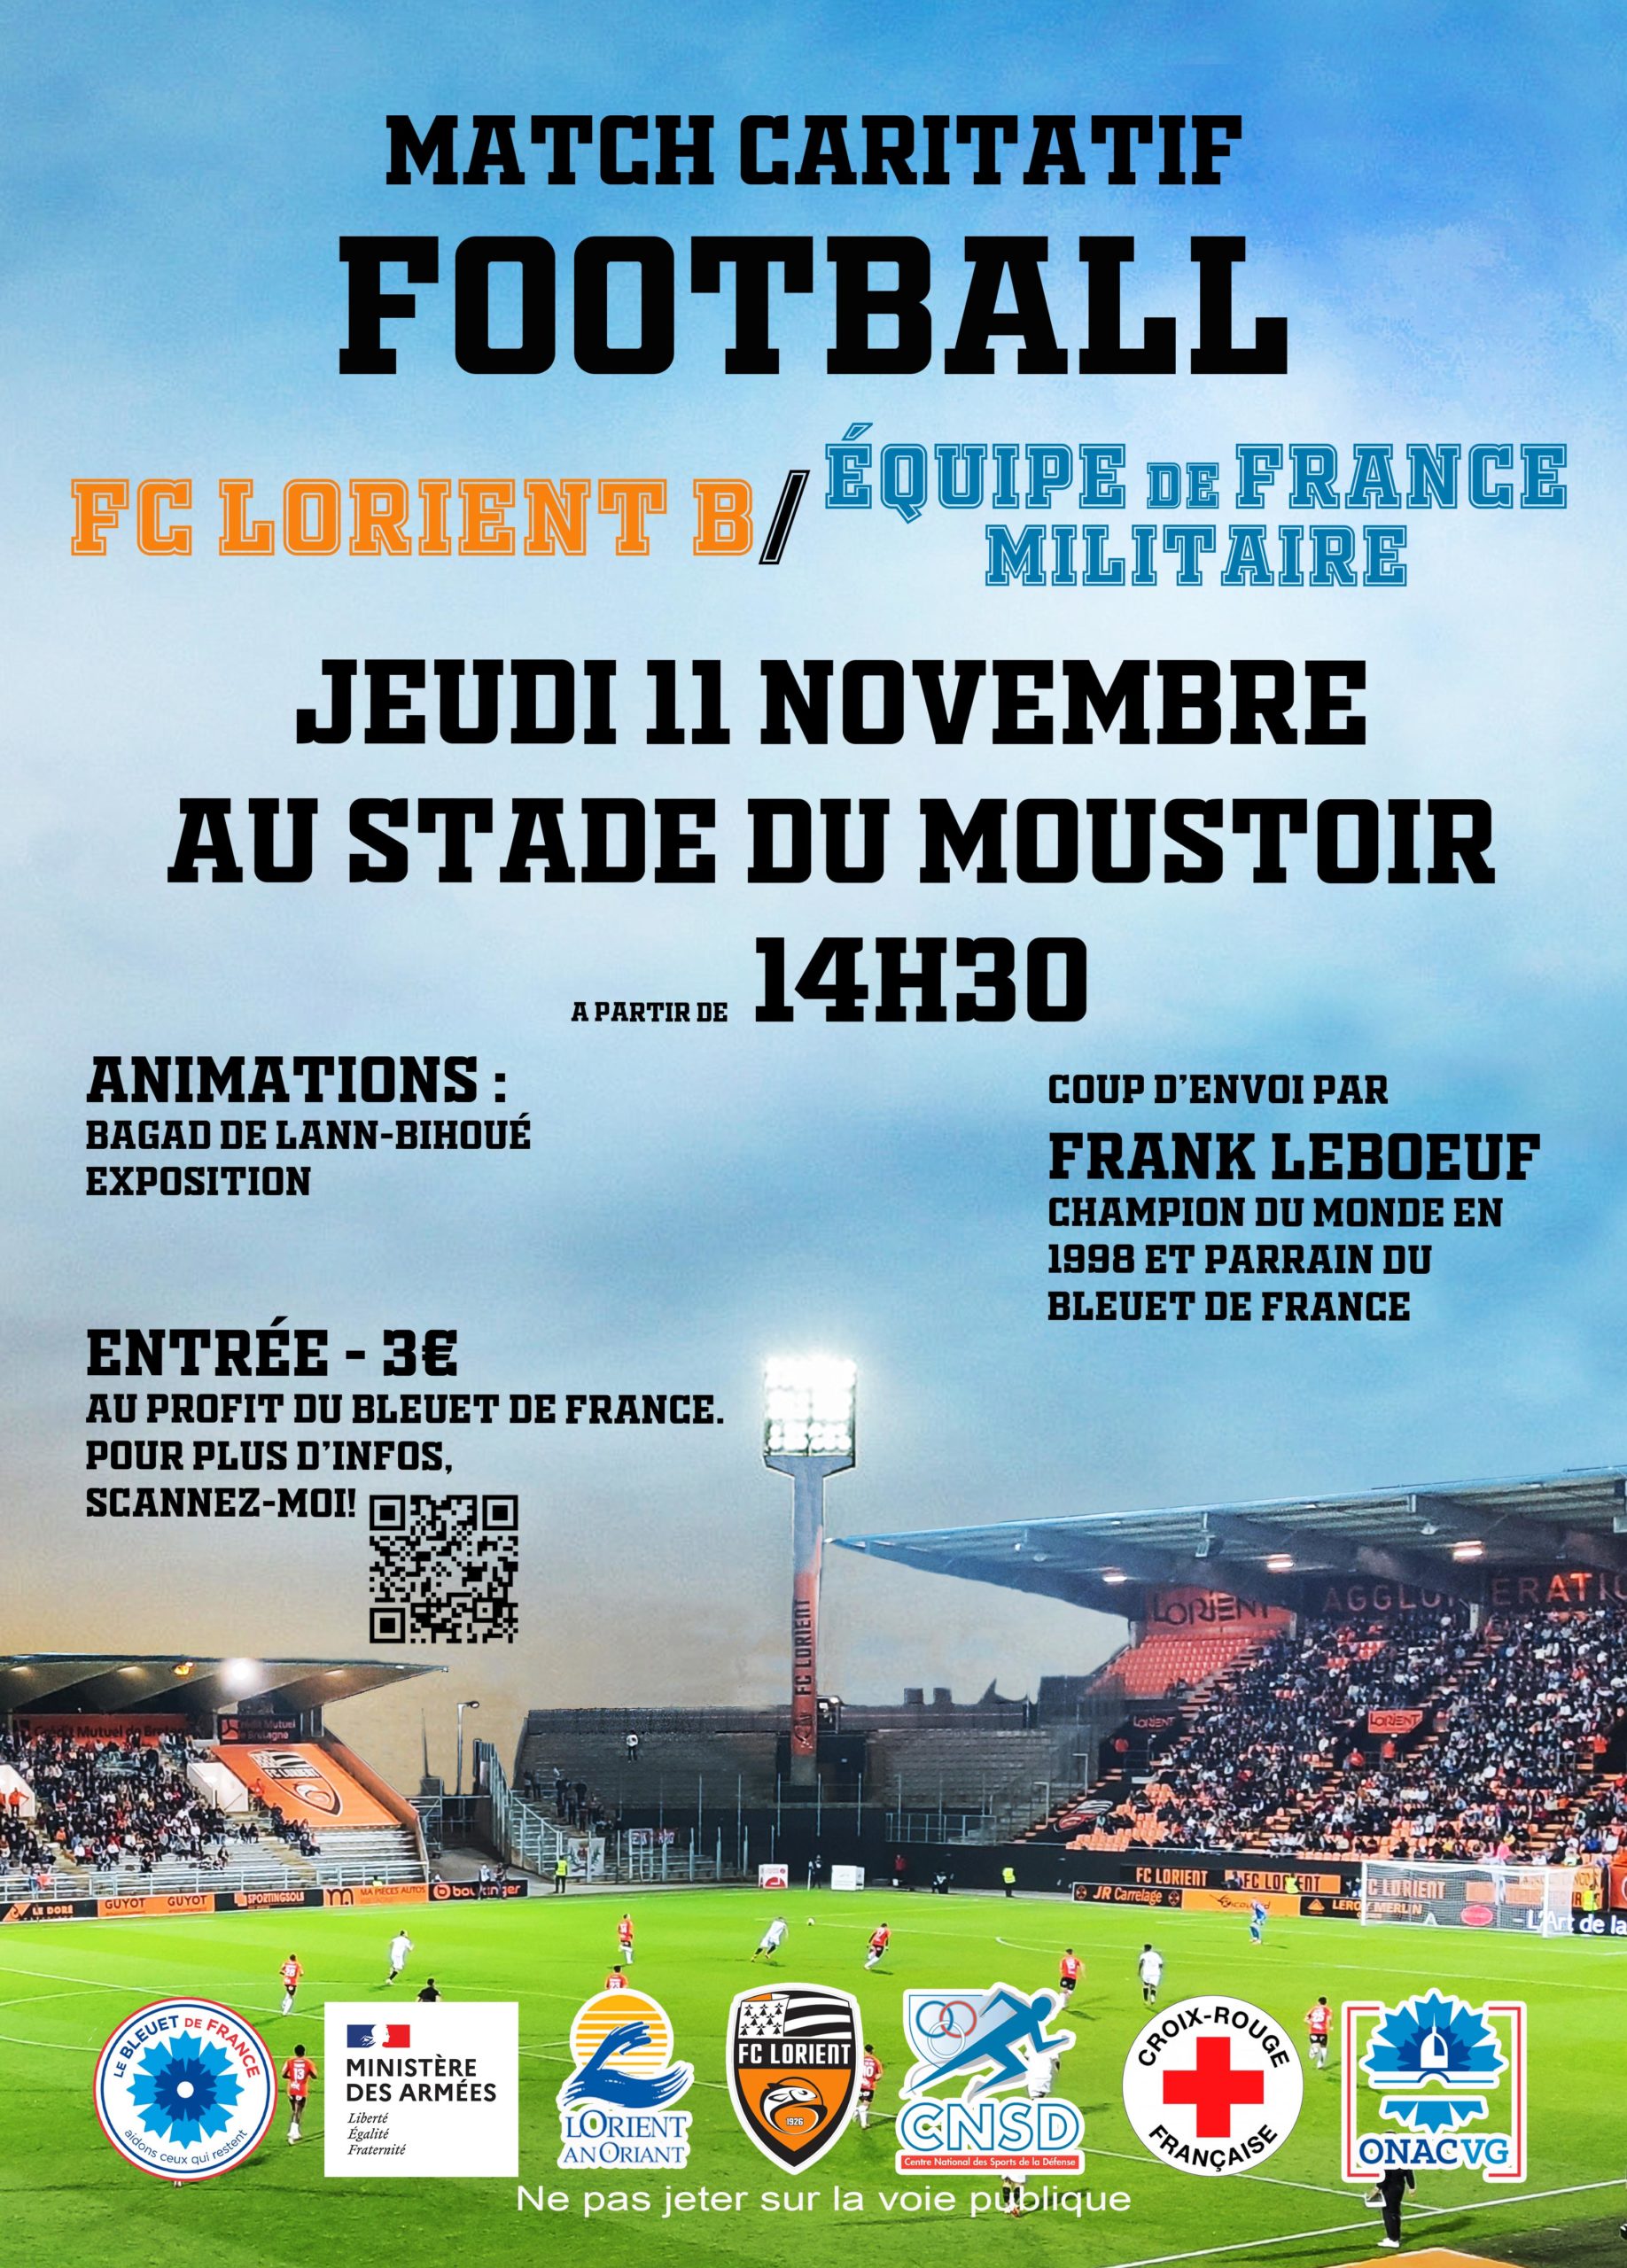 Match caritatif de Football – 11 novembre 2021 post thumbnail